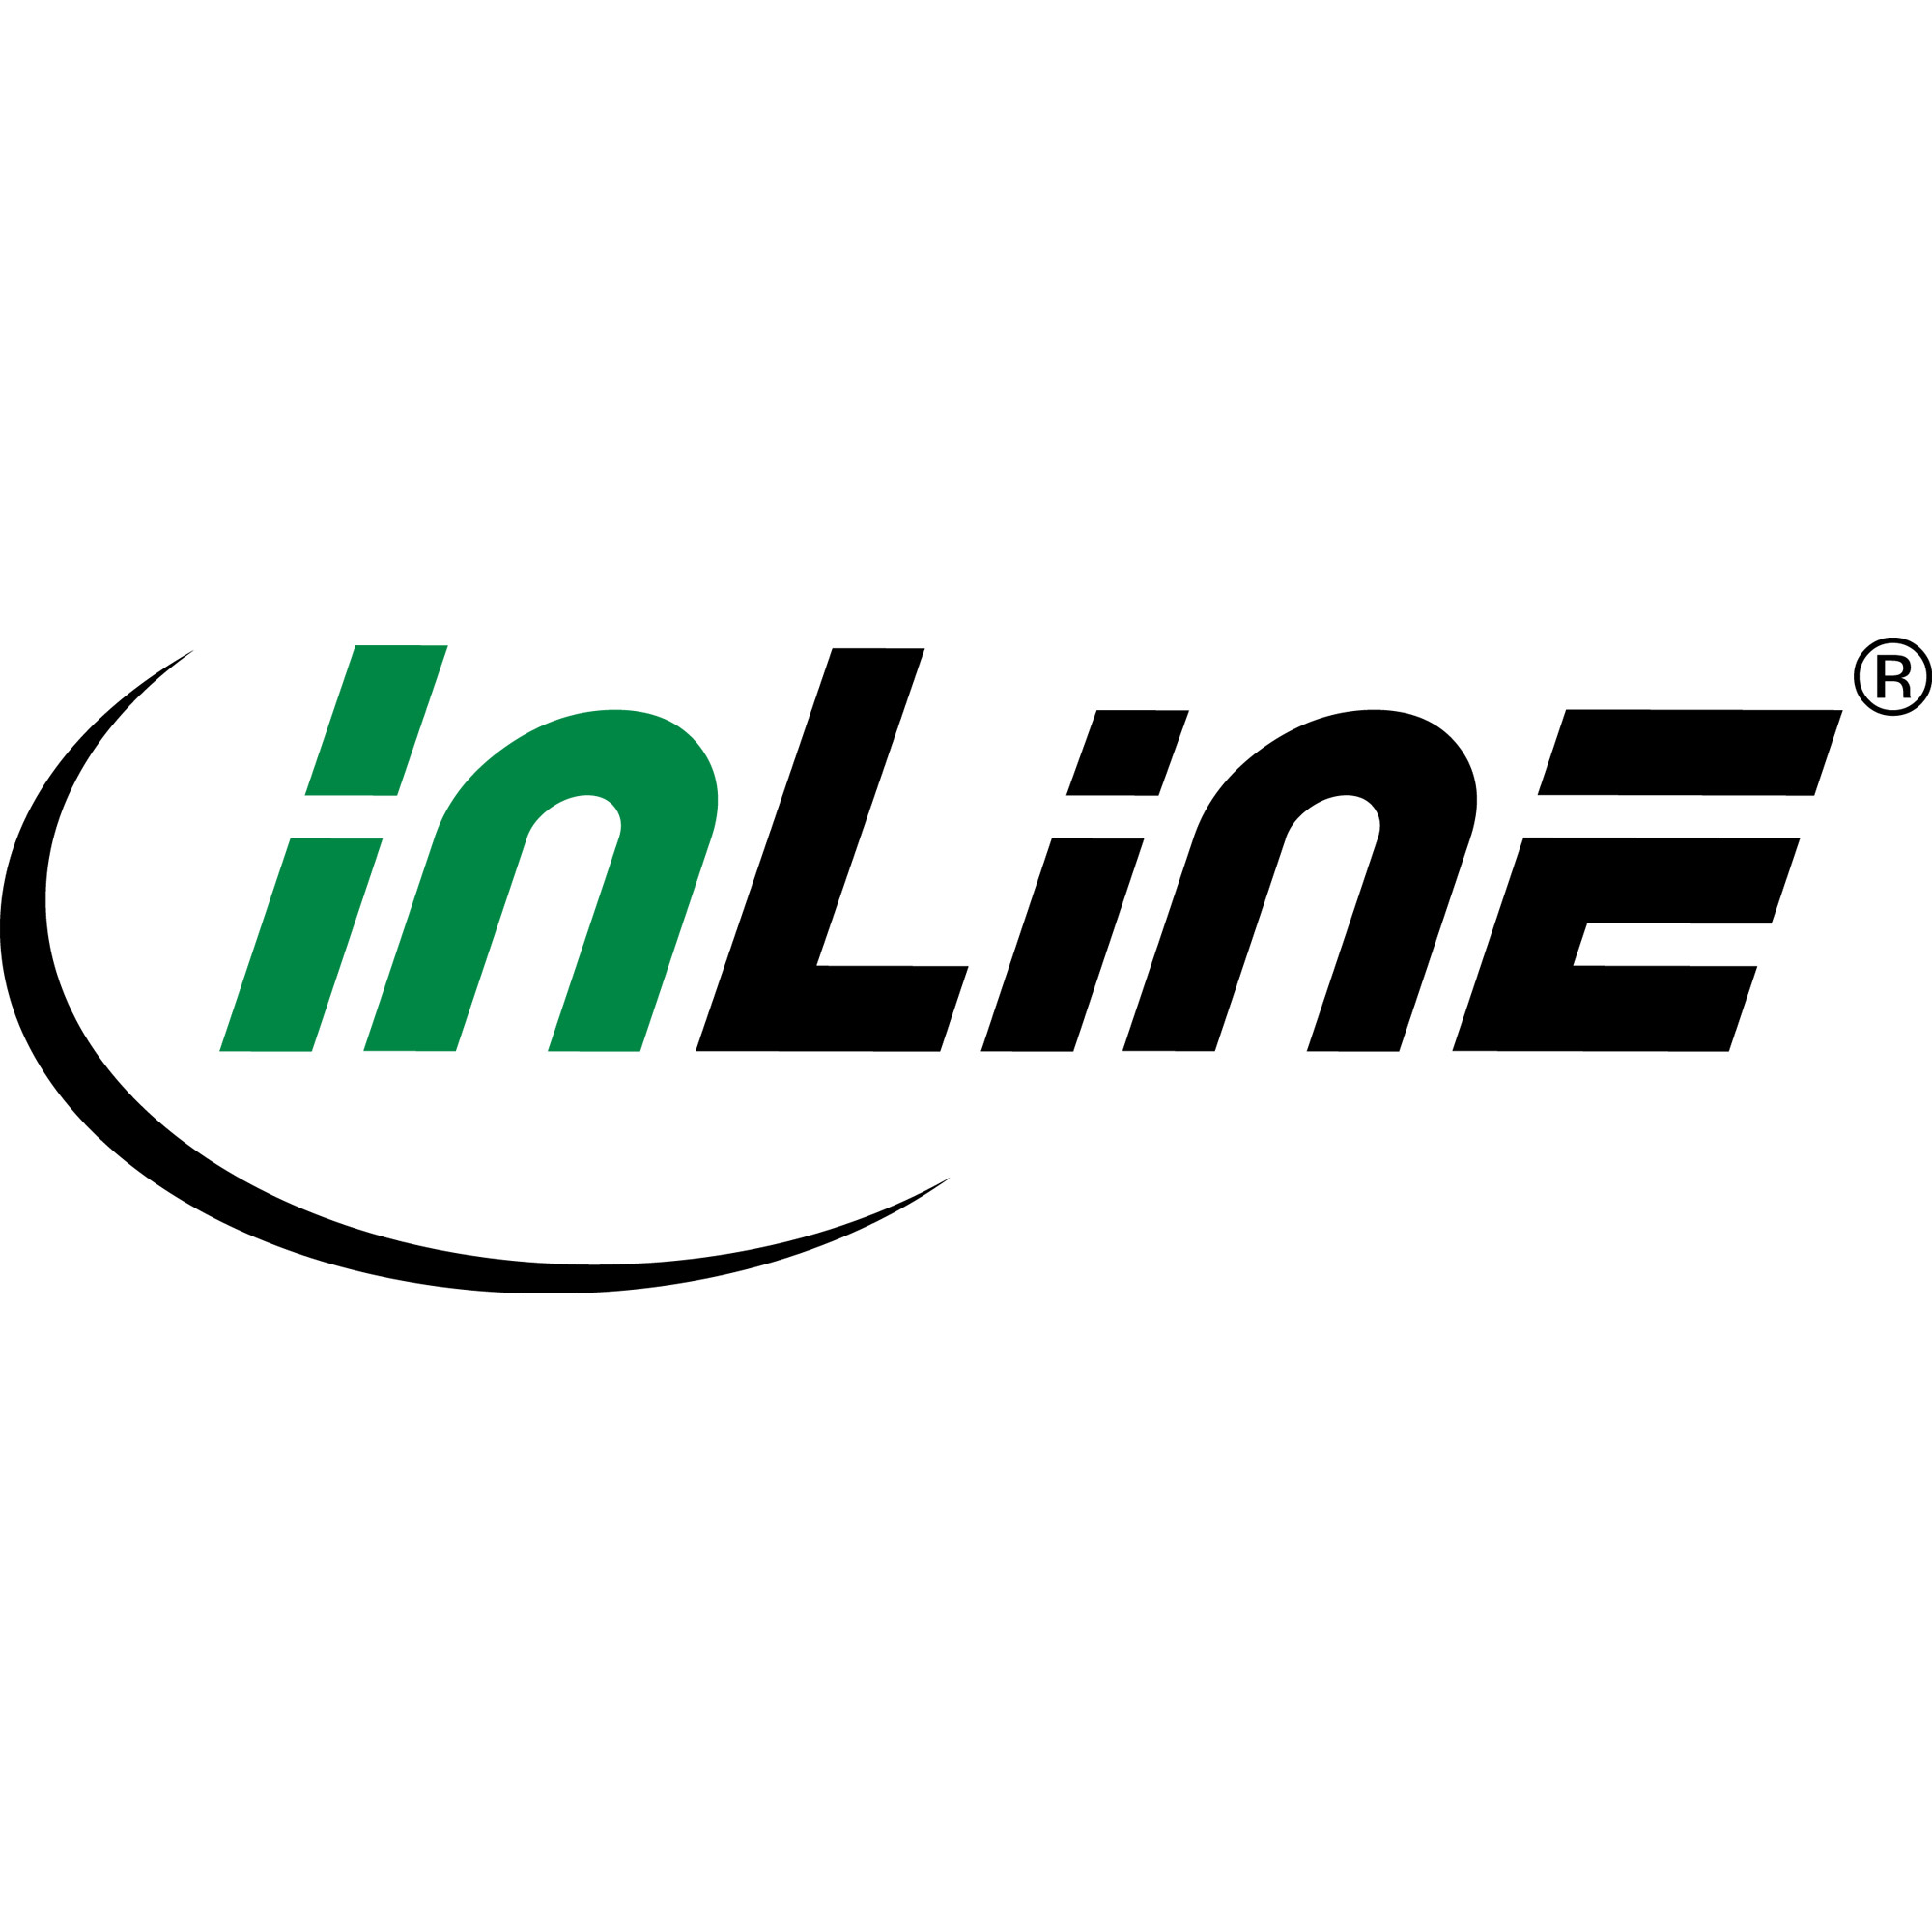 InLine - DVI-Kabel - 1,5m - Schwarz